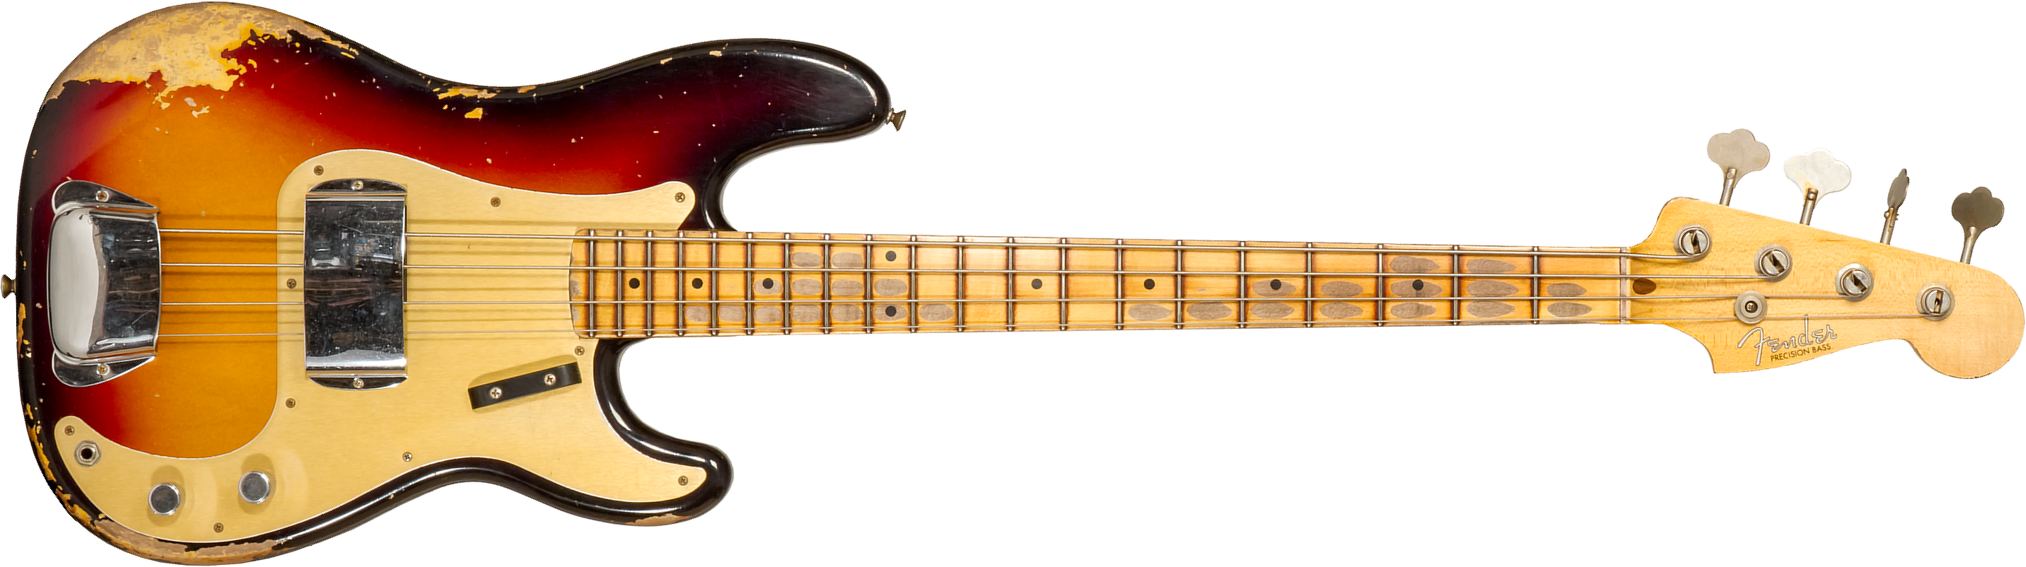 Fender Custom Shop Precision Bass 1958 Mn #cz573256 - Heavy Relic 3-color Sunburst - Basse Électrique Solid Body - Main picture